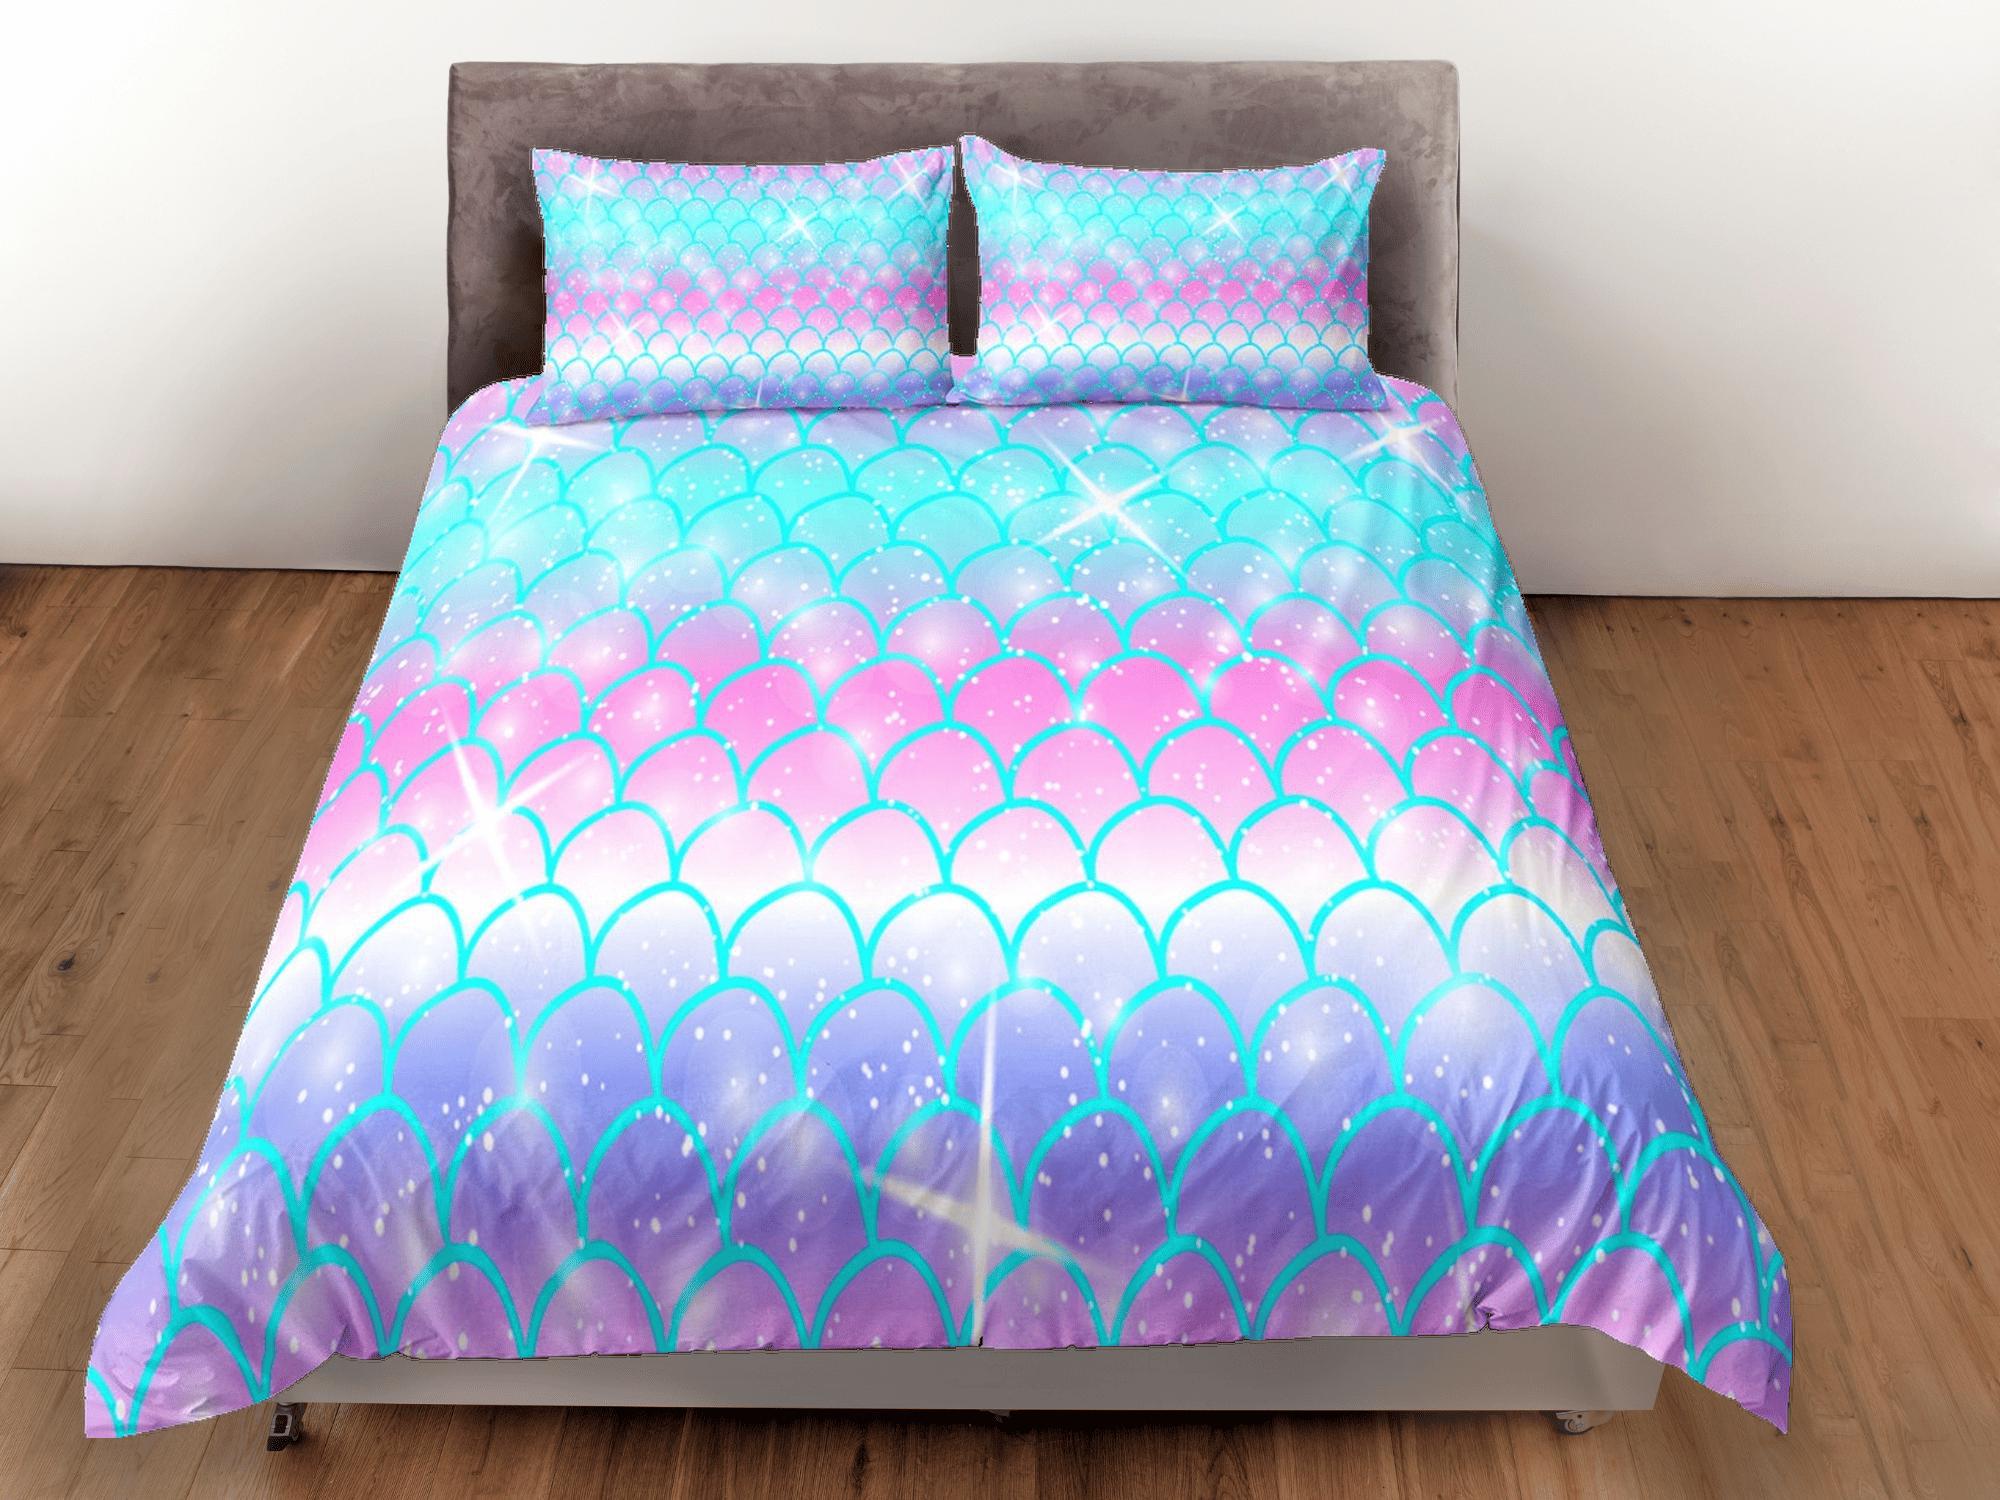 daintyduvet Pastel Unicorn Rainbow Duvet Cover Set, Mermaid Tail Blanket Dorm Bedding, Comforter Cover Twin, Kids Bedding